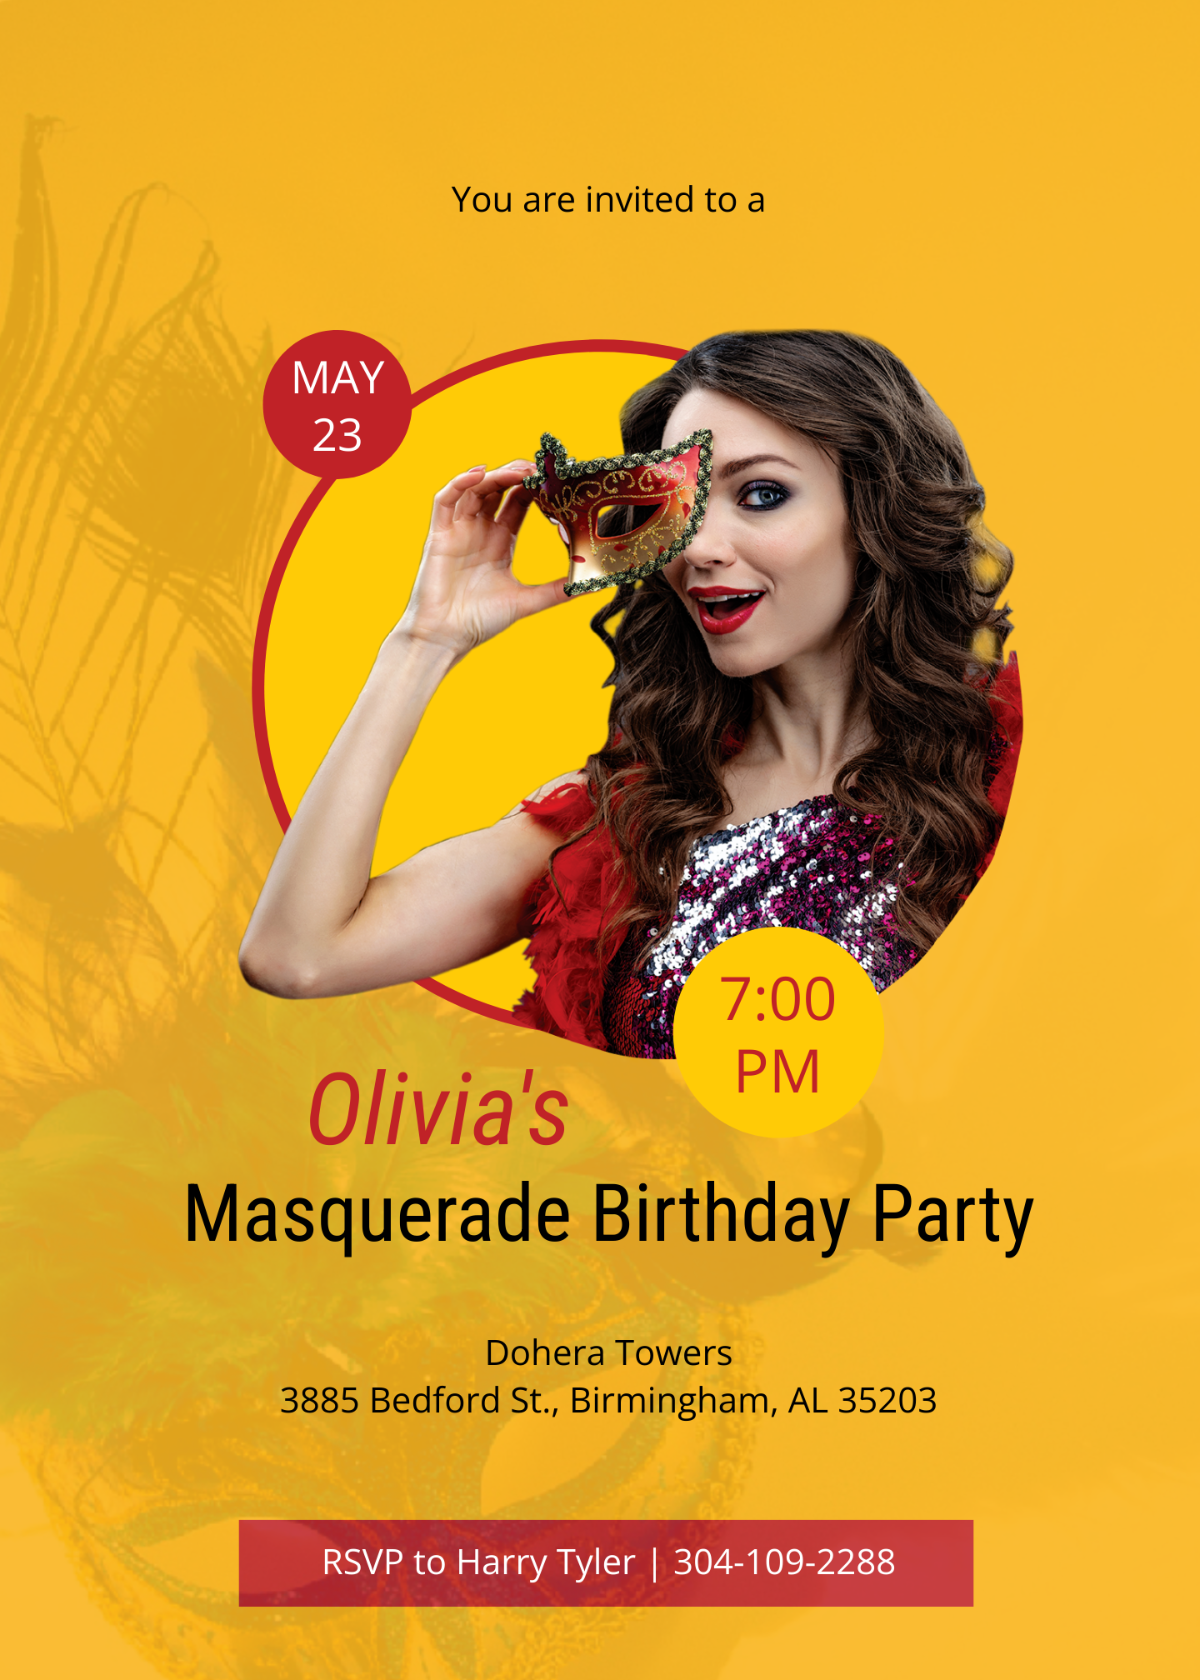 Masquerade Ball Celebration Party Invitation Template